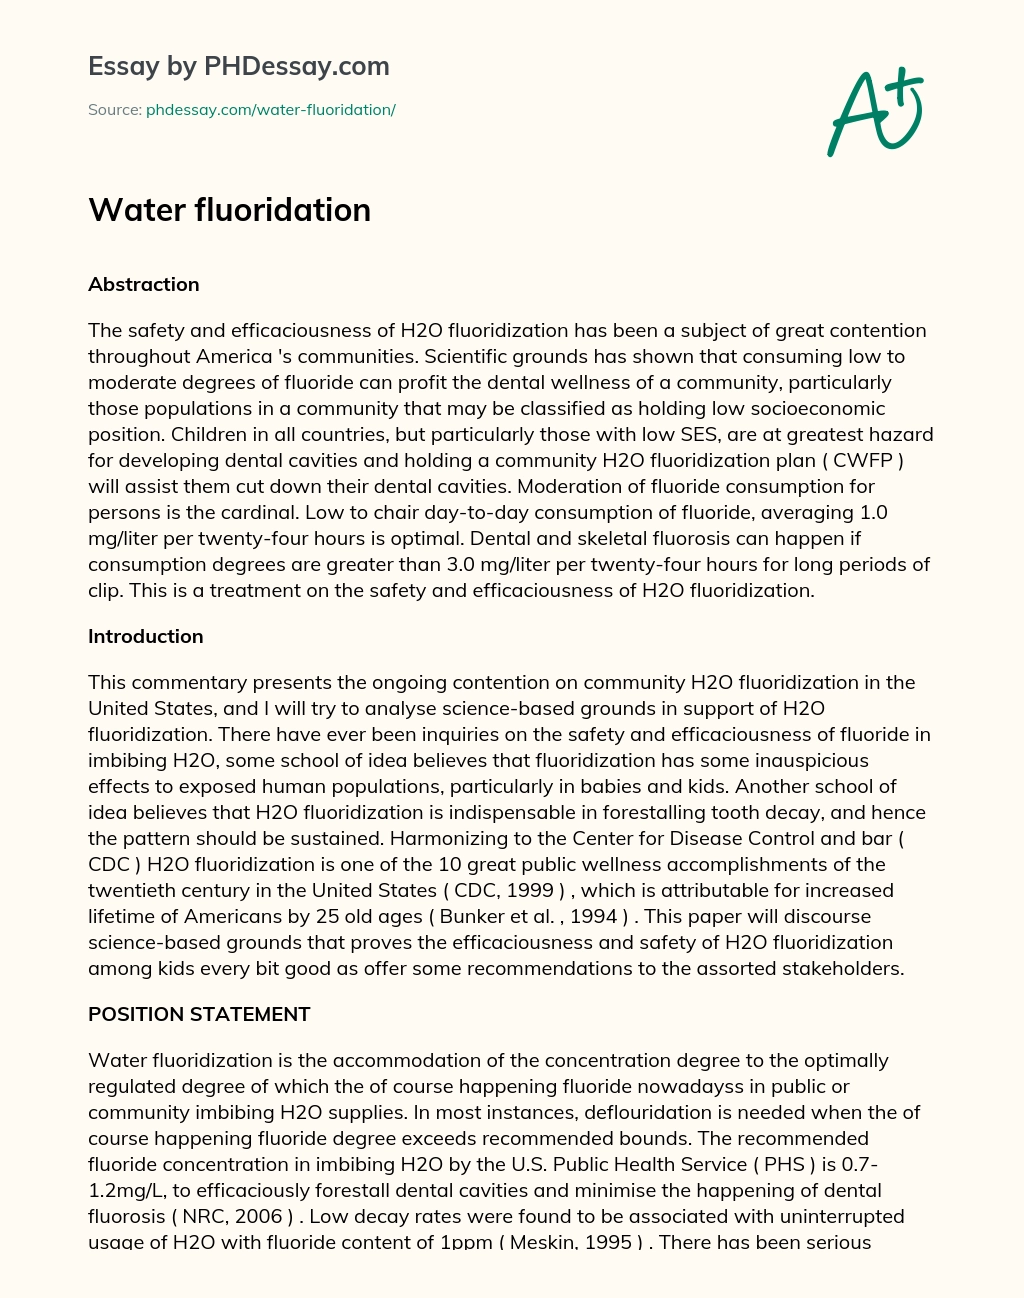 Water fluoridation essay